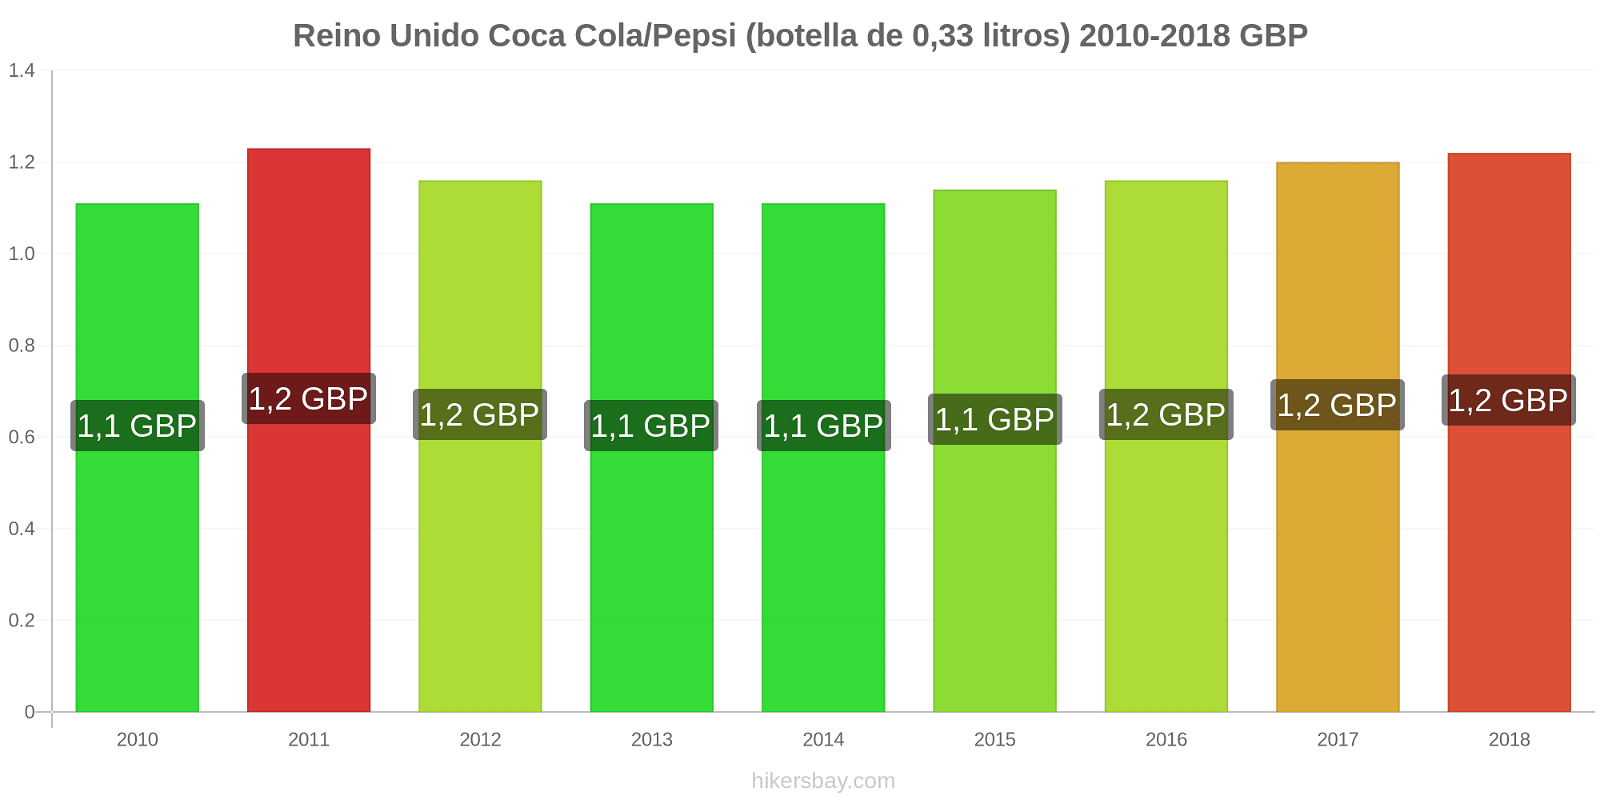 Reino Unido cambios de precios Coca-Cola/Pepsi (botella de 0.33 litros) hikersbay.com